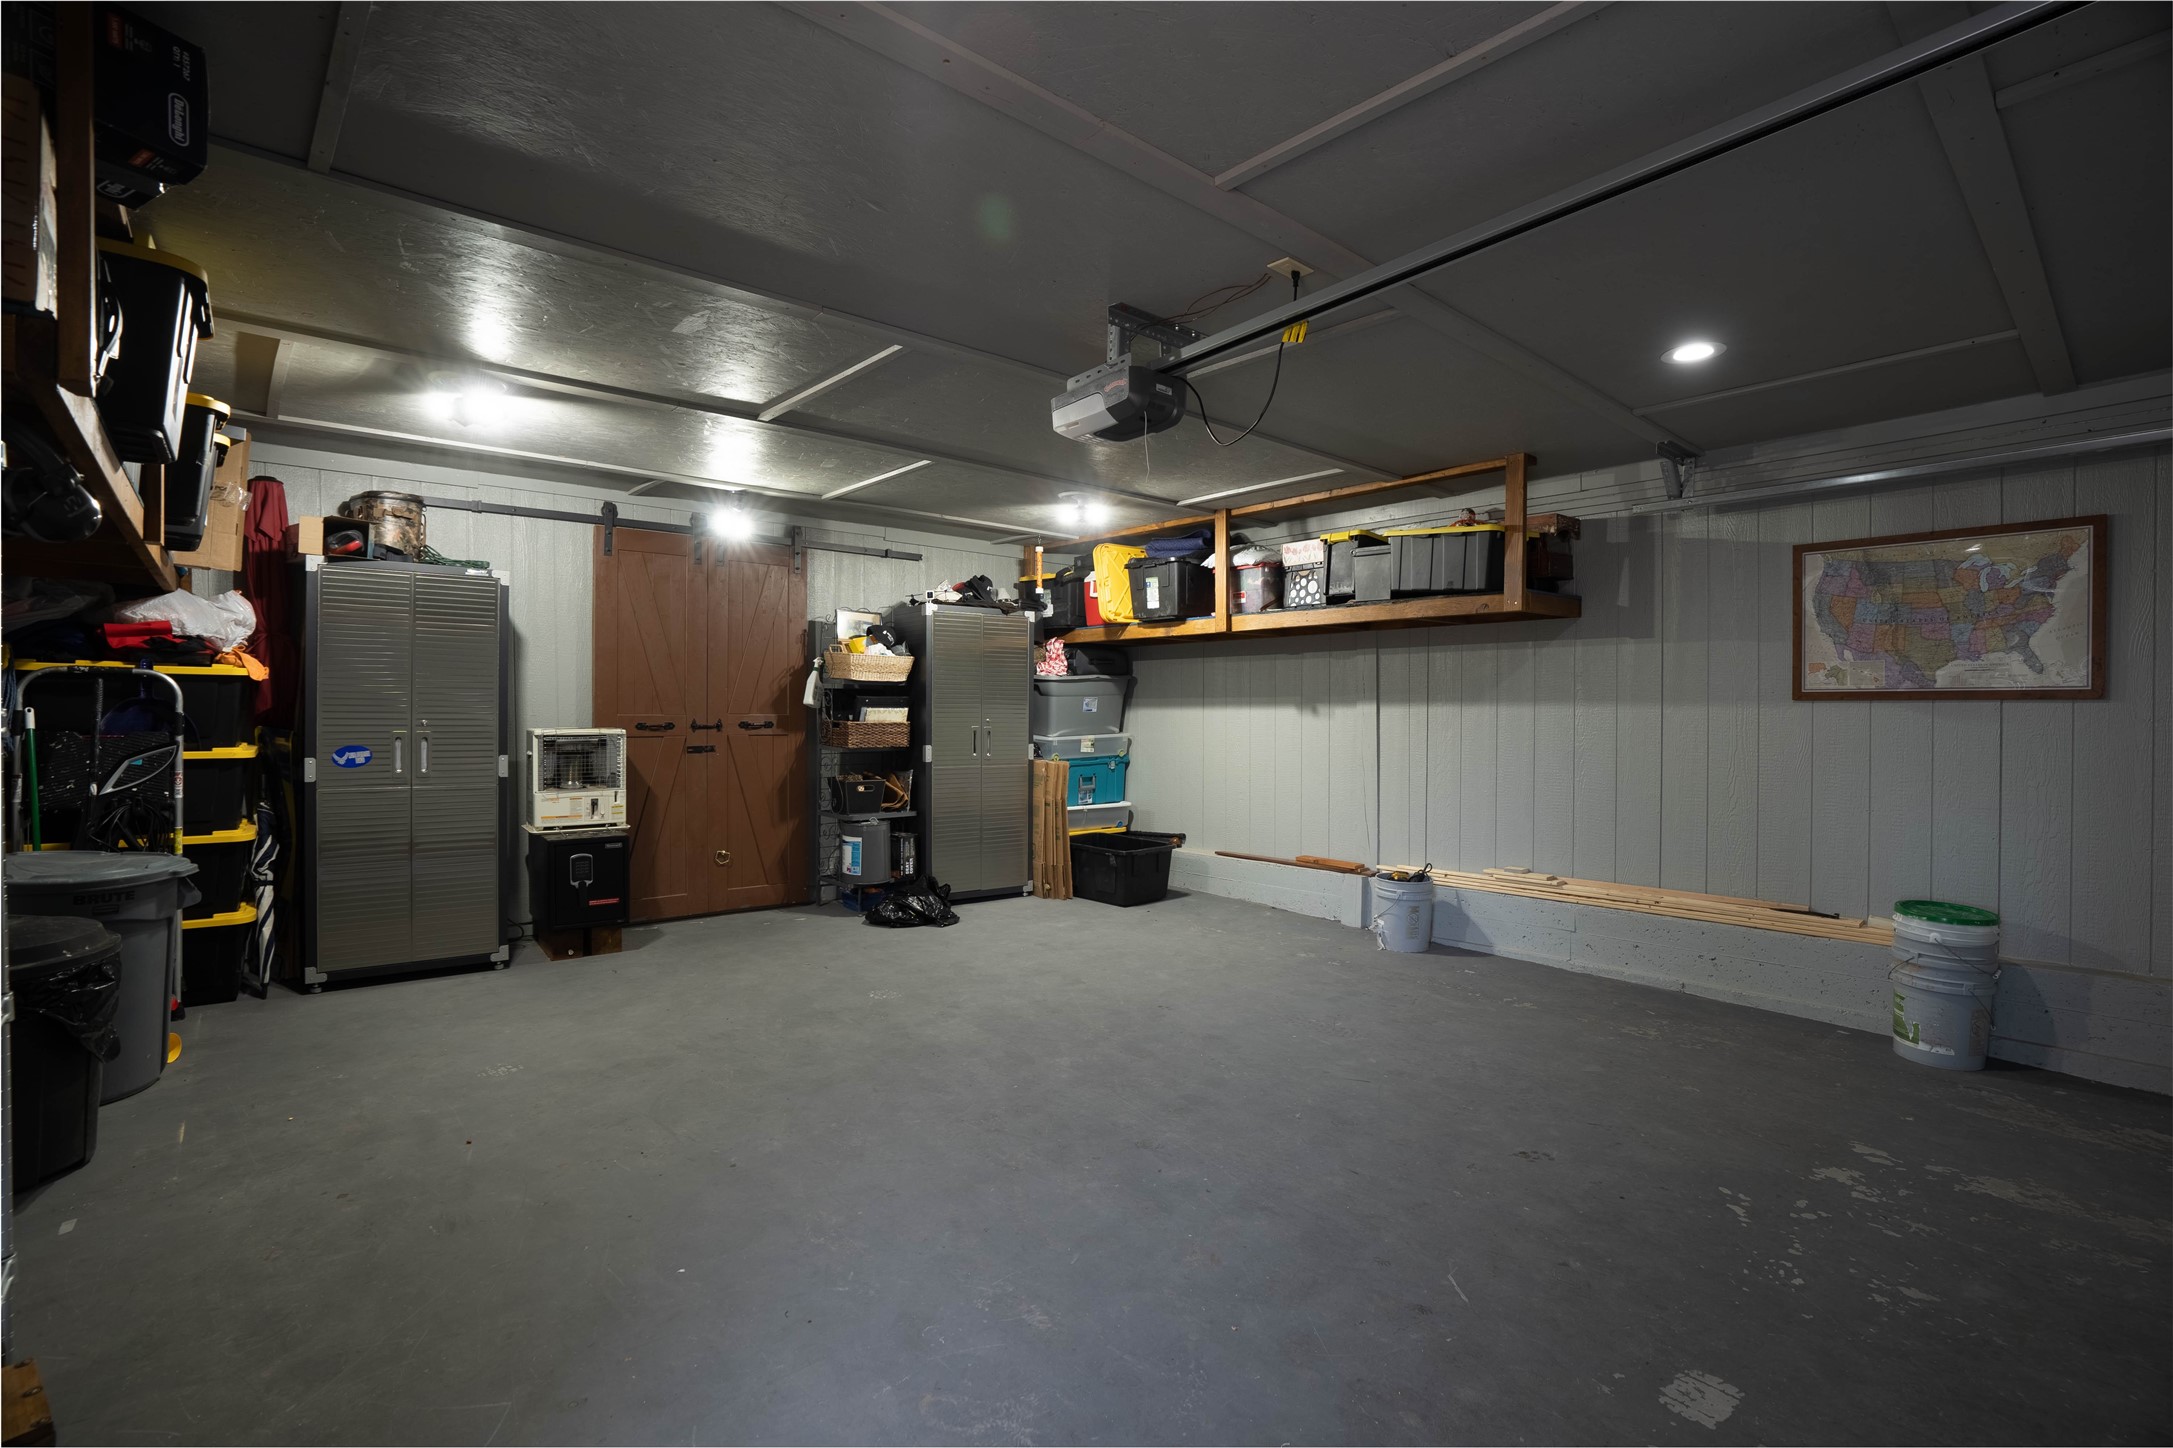 Garage with Workshop at back